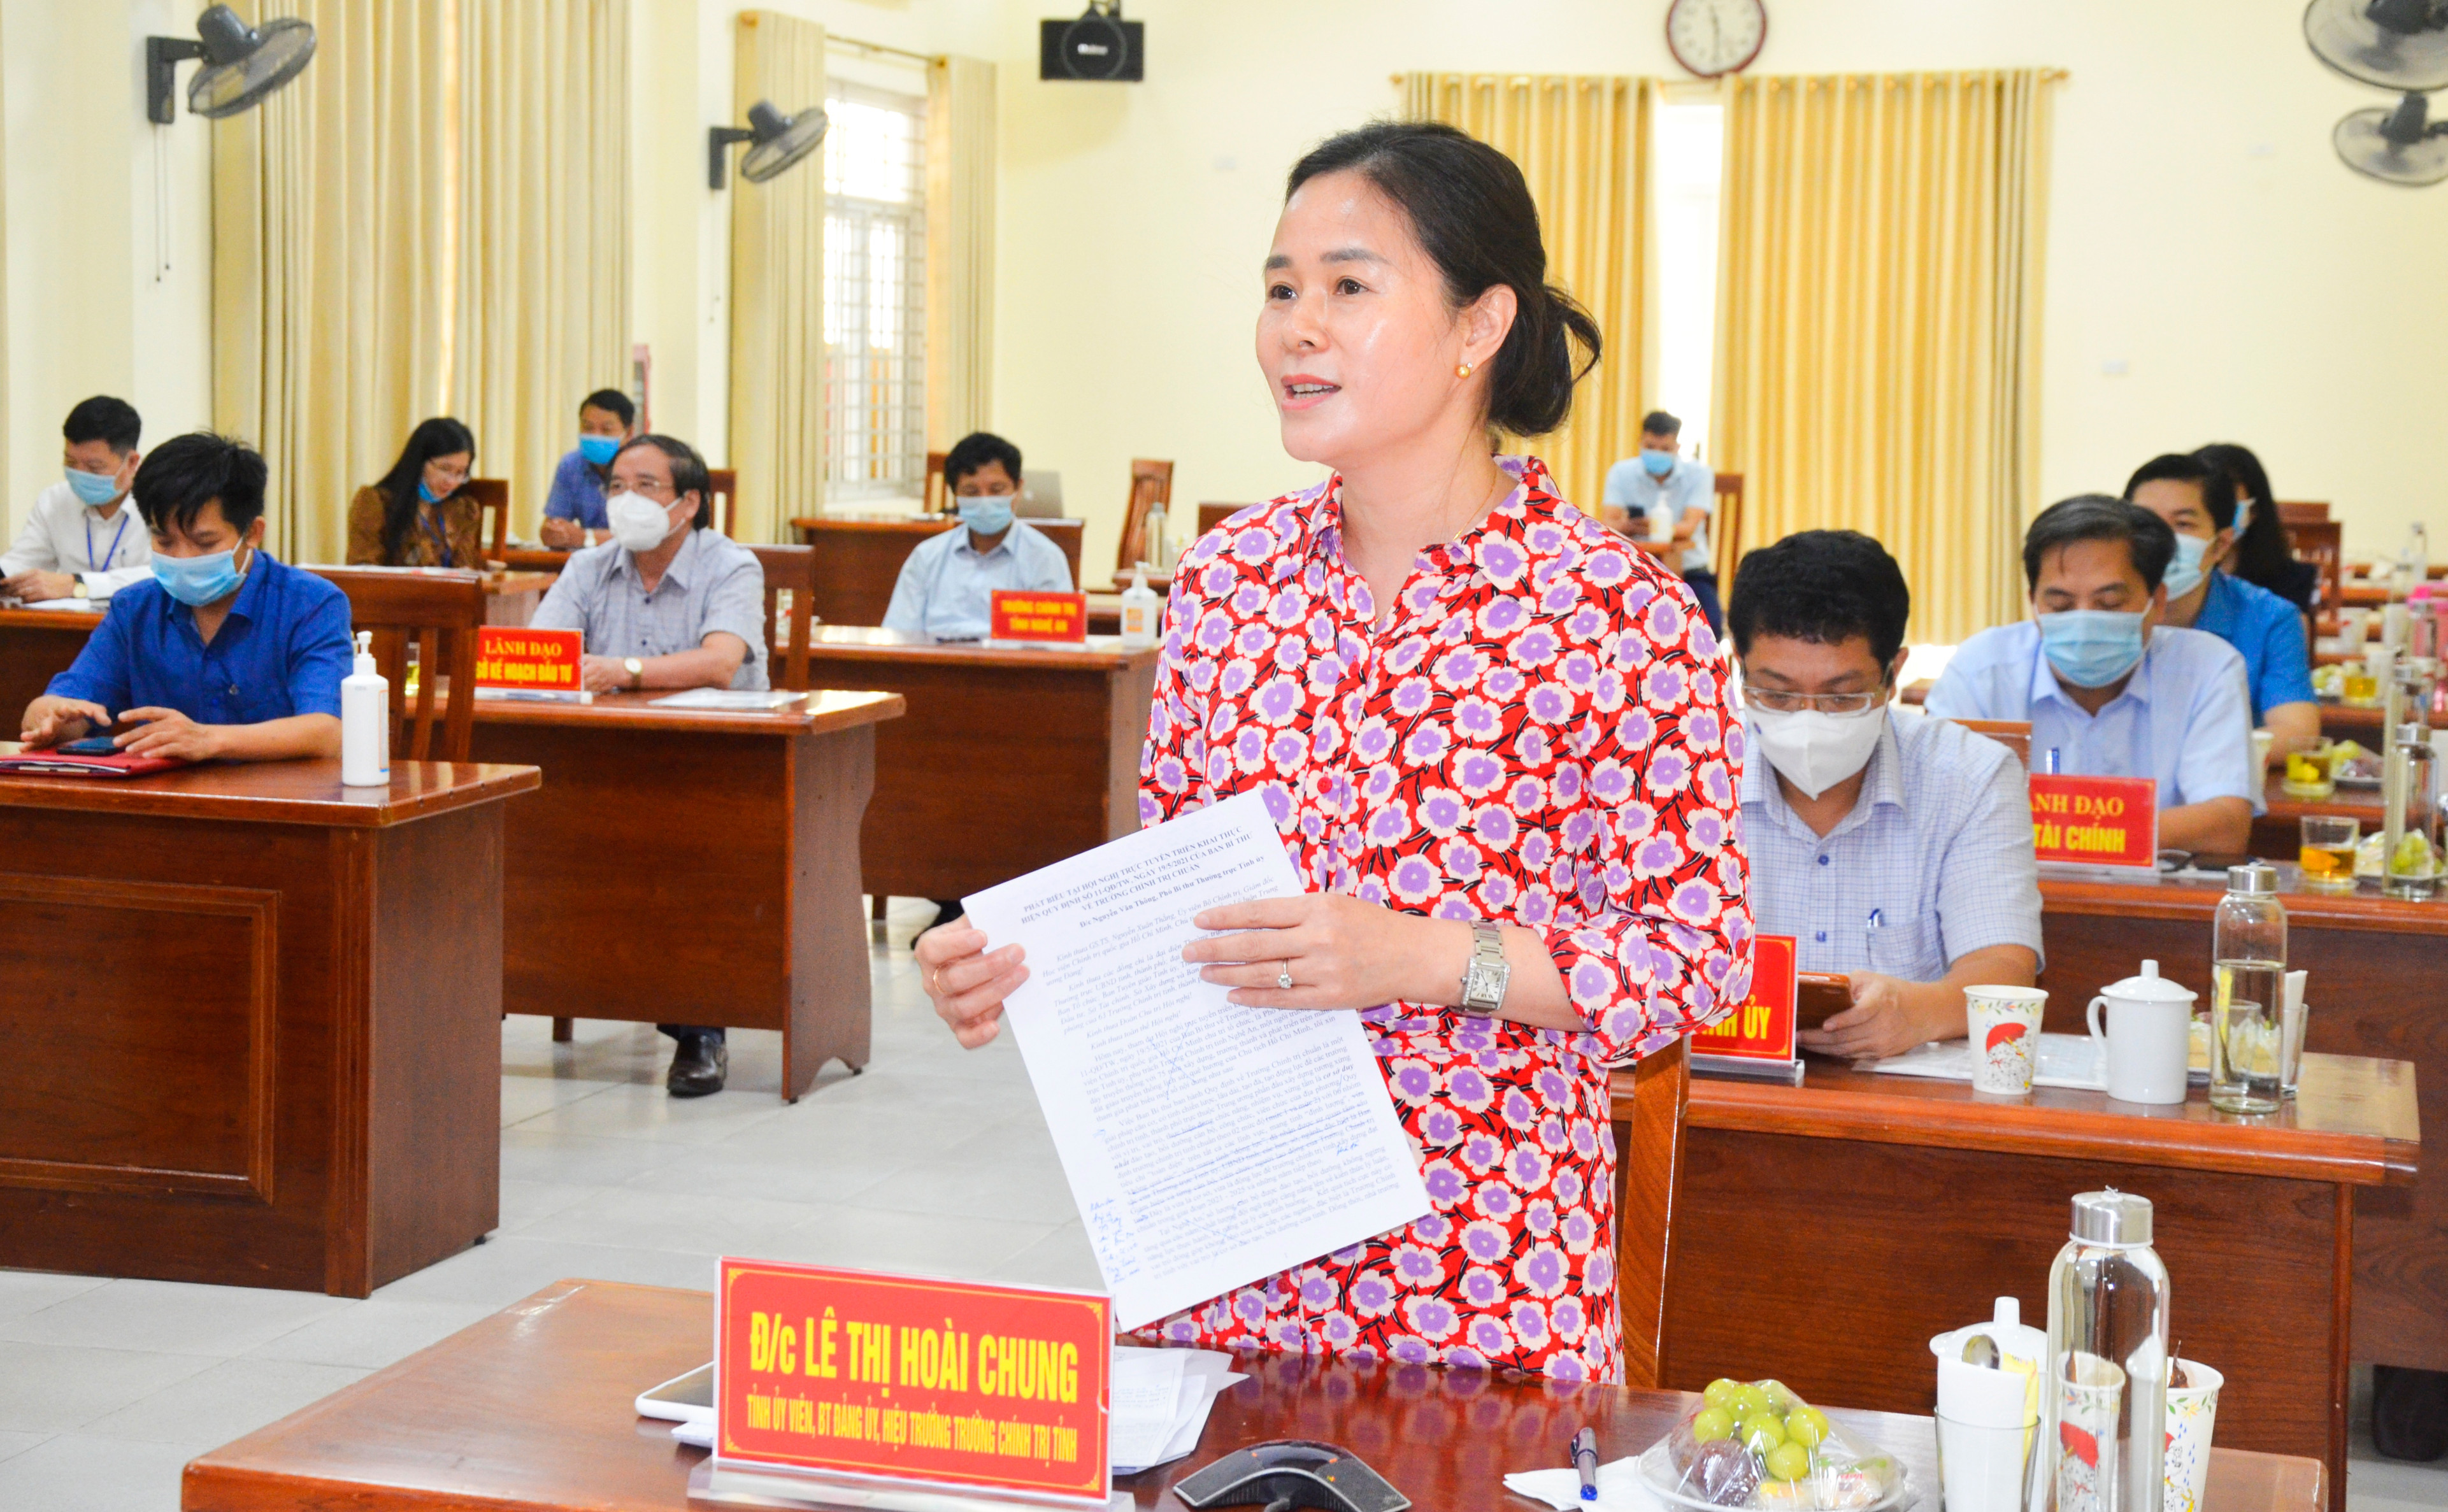 Hiệu trưởng Trường Chính trị tỉnh Lê Thị Hoài Chung phát biểu tại hội nghị. Ảnh: Thanh Lê